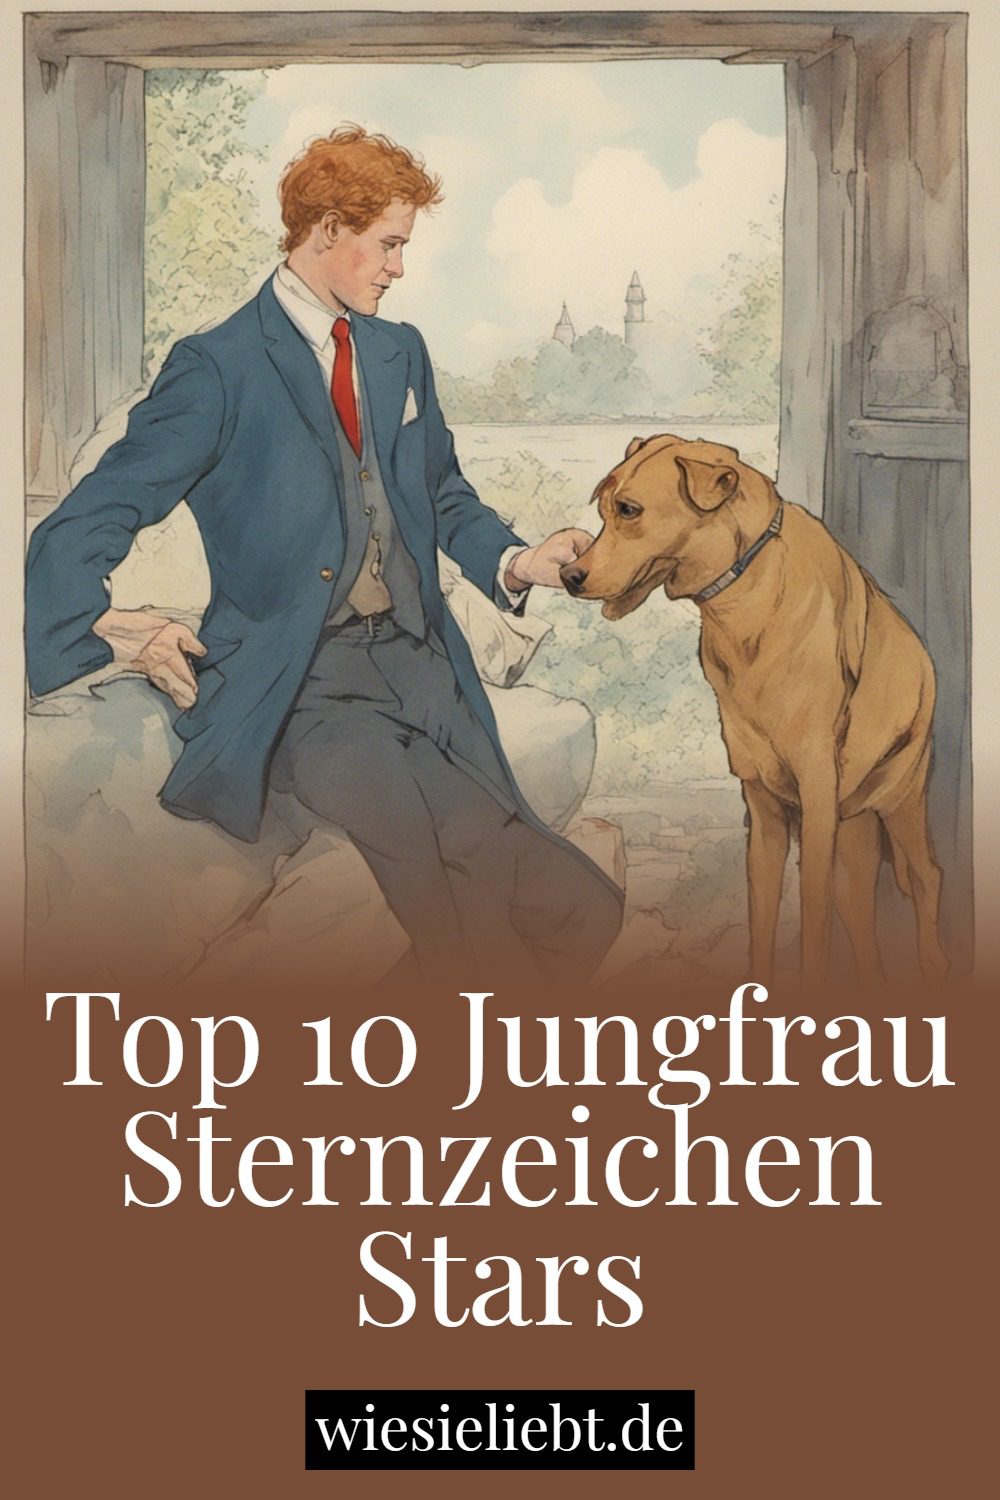 Top 10 Jungfrau Sternzeichen Stars